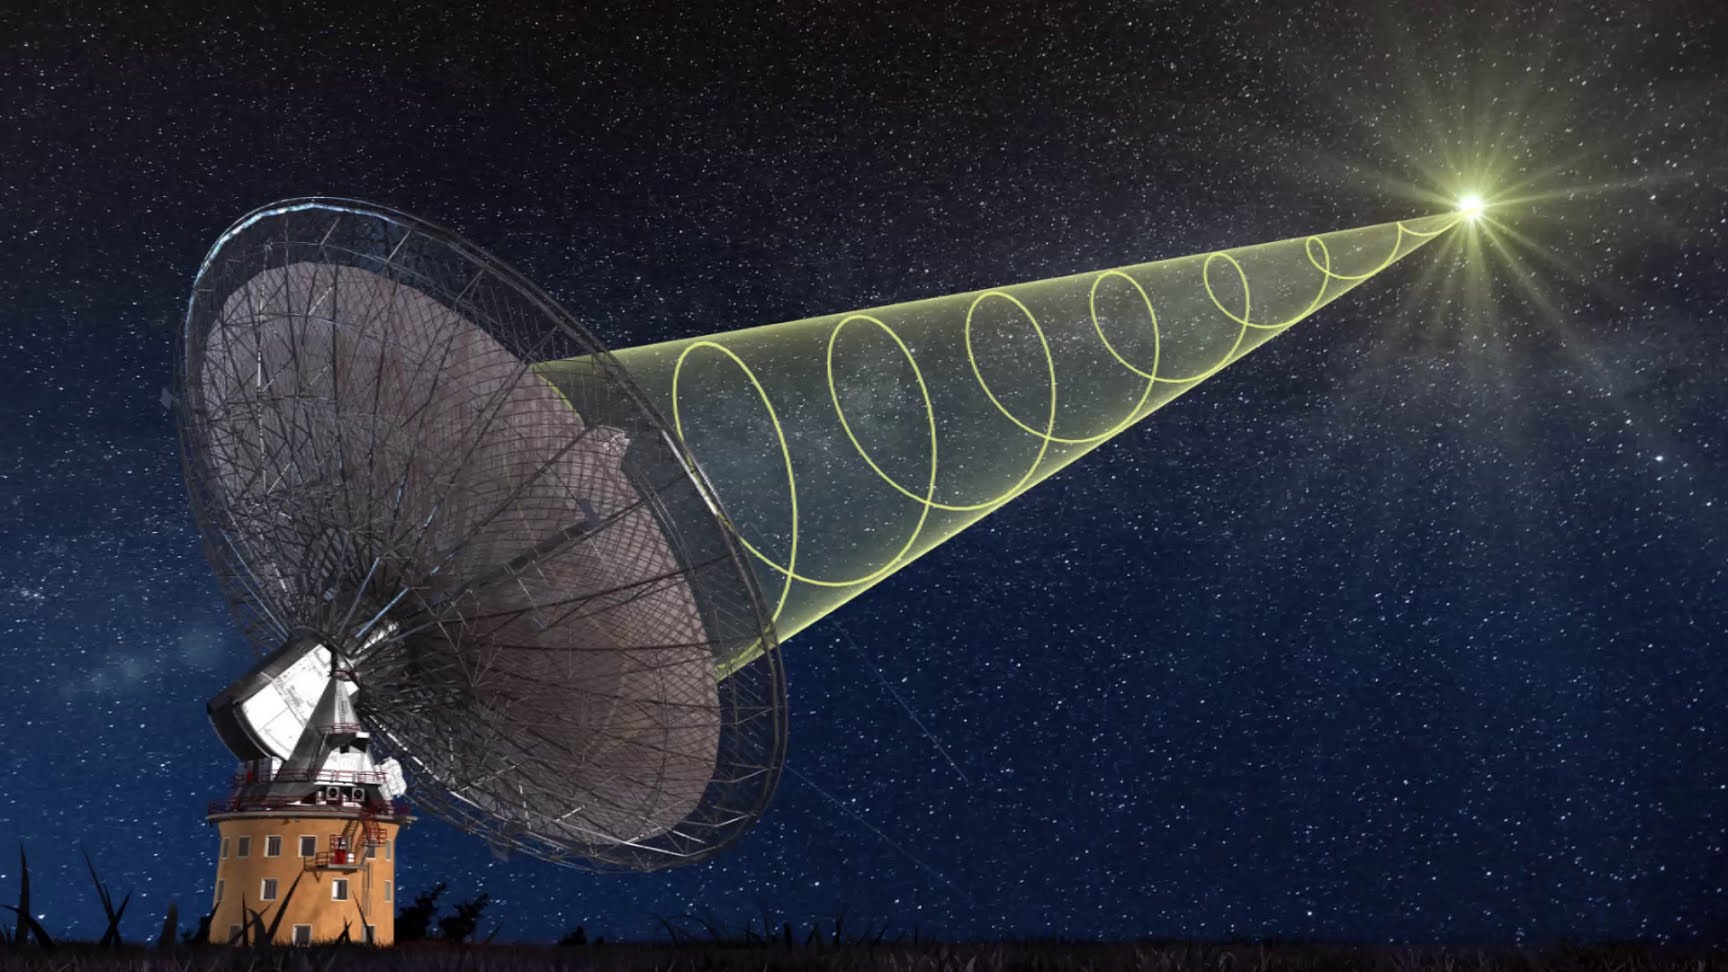 15 инопланетных сигналов были зафиксированы учеными